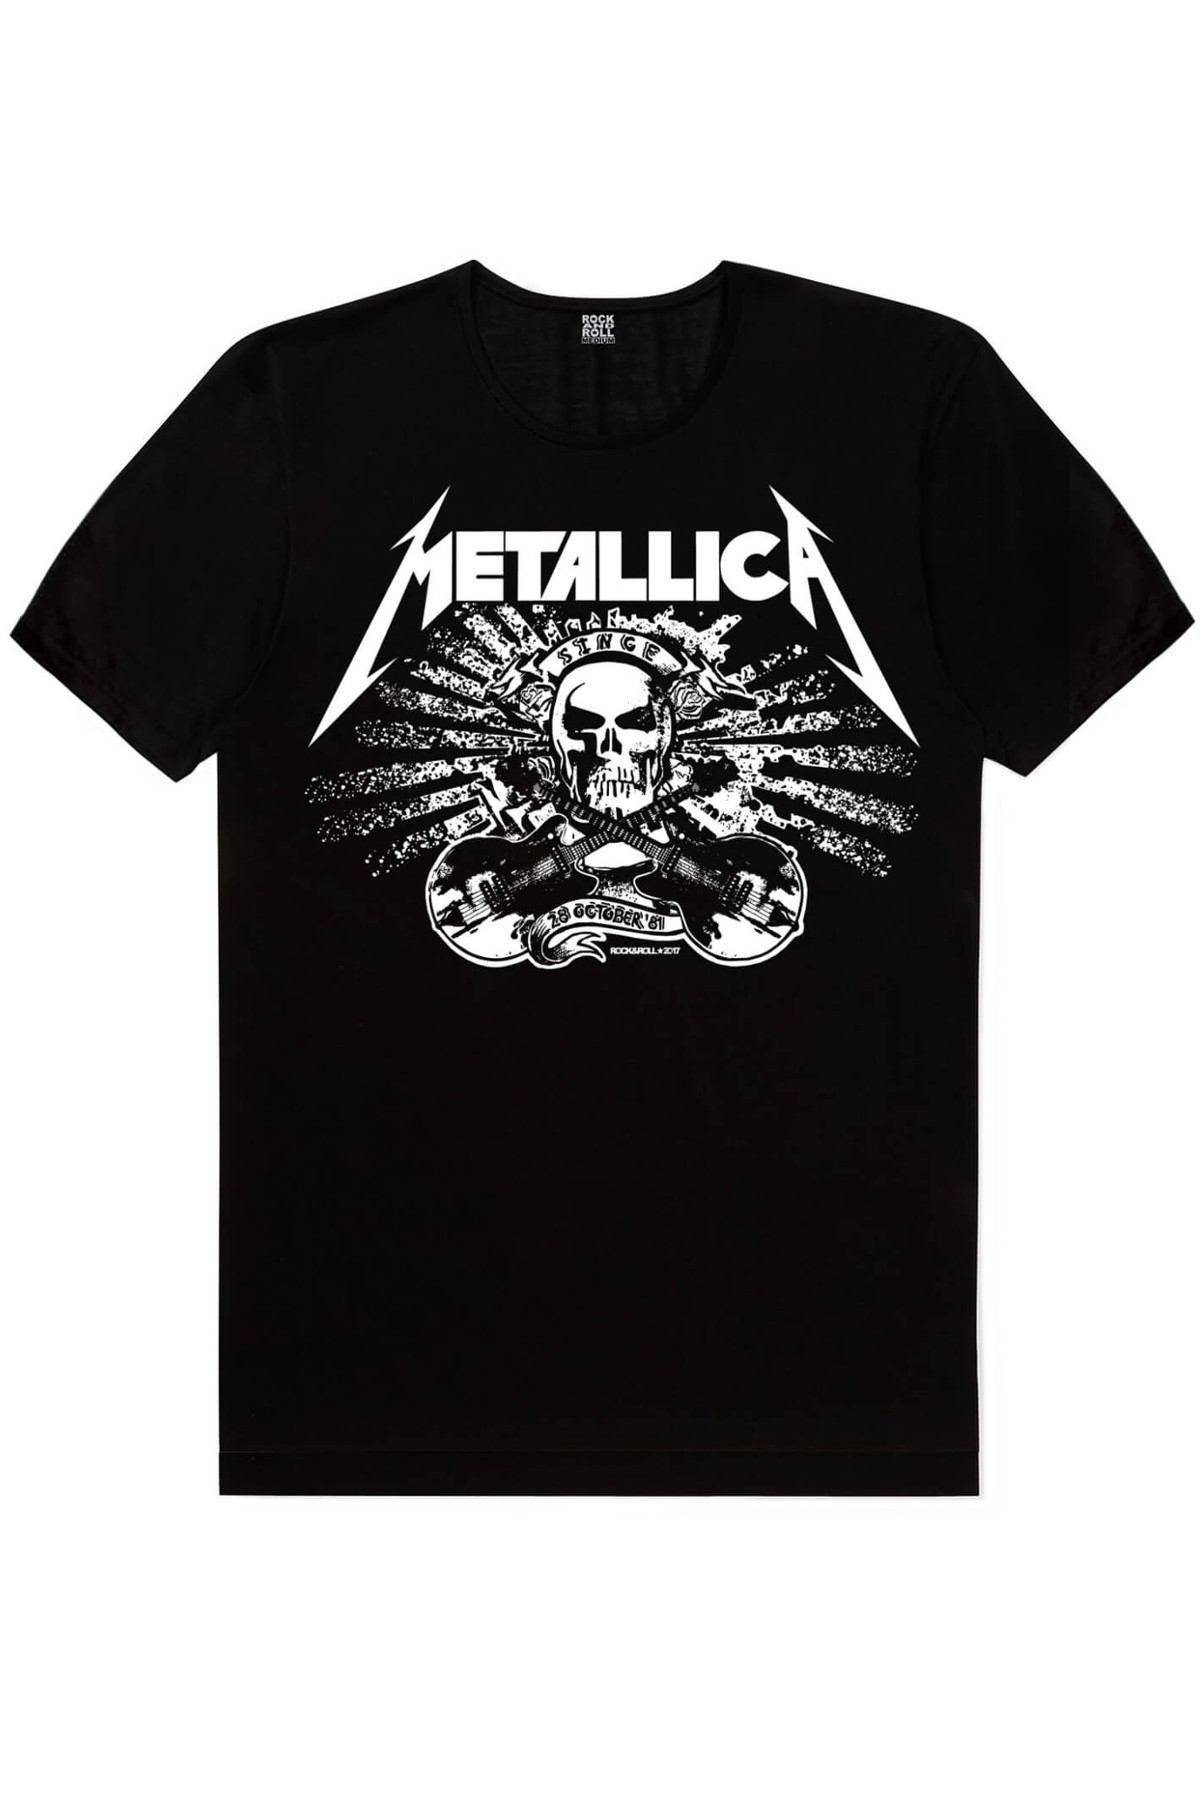 Motorcu Kurukafa, Metallica Kurukafa Çocuk Tişört 2'li Eko Paket